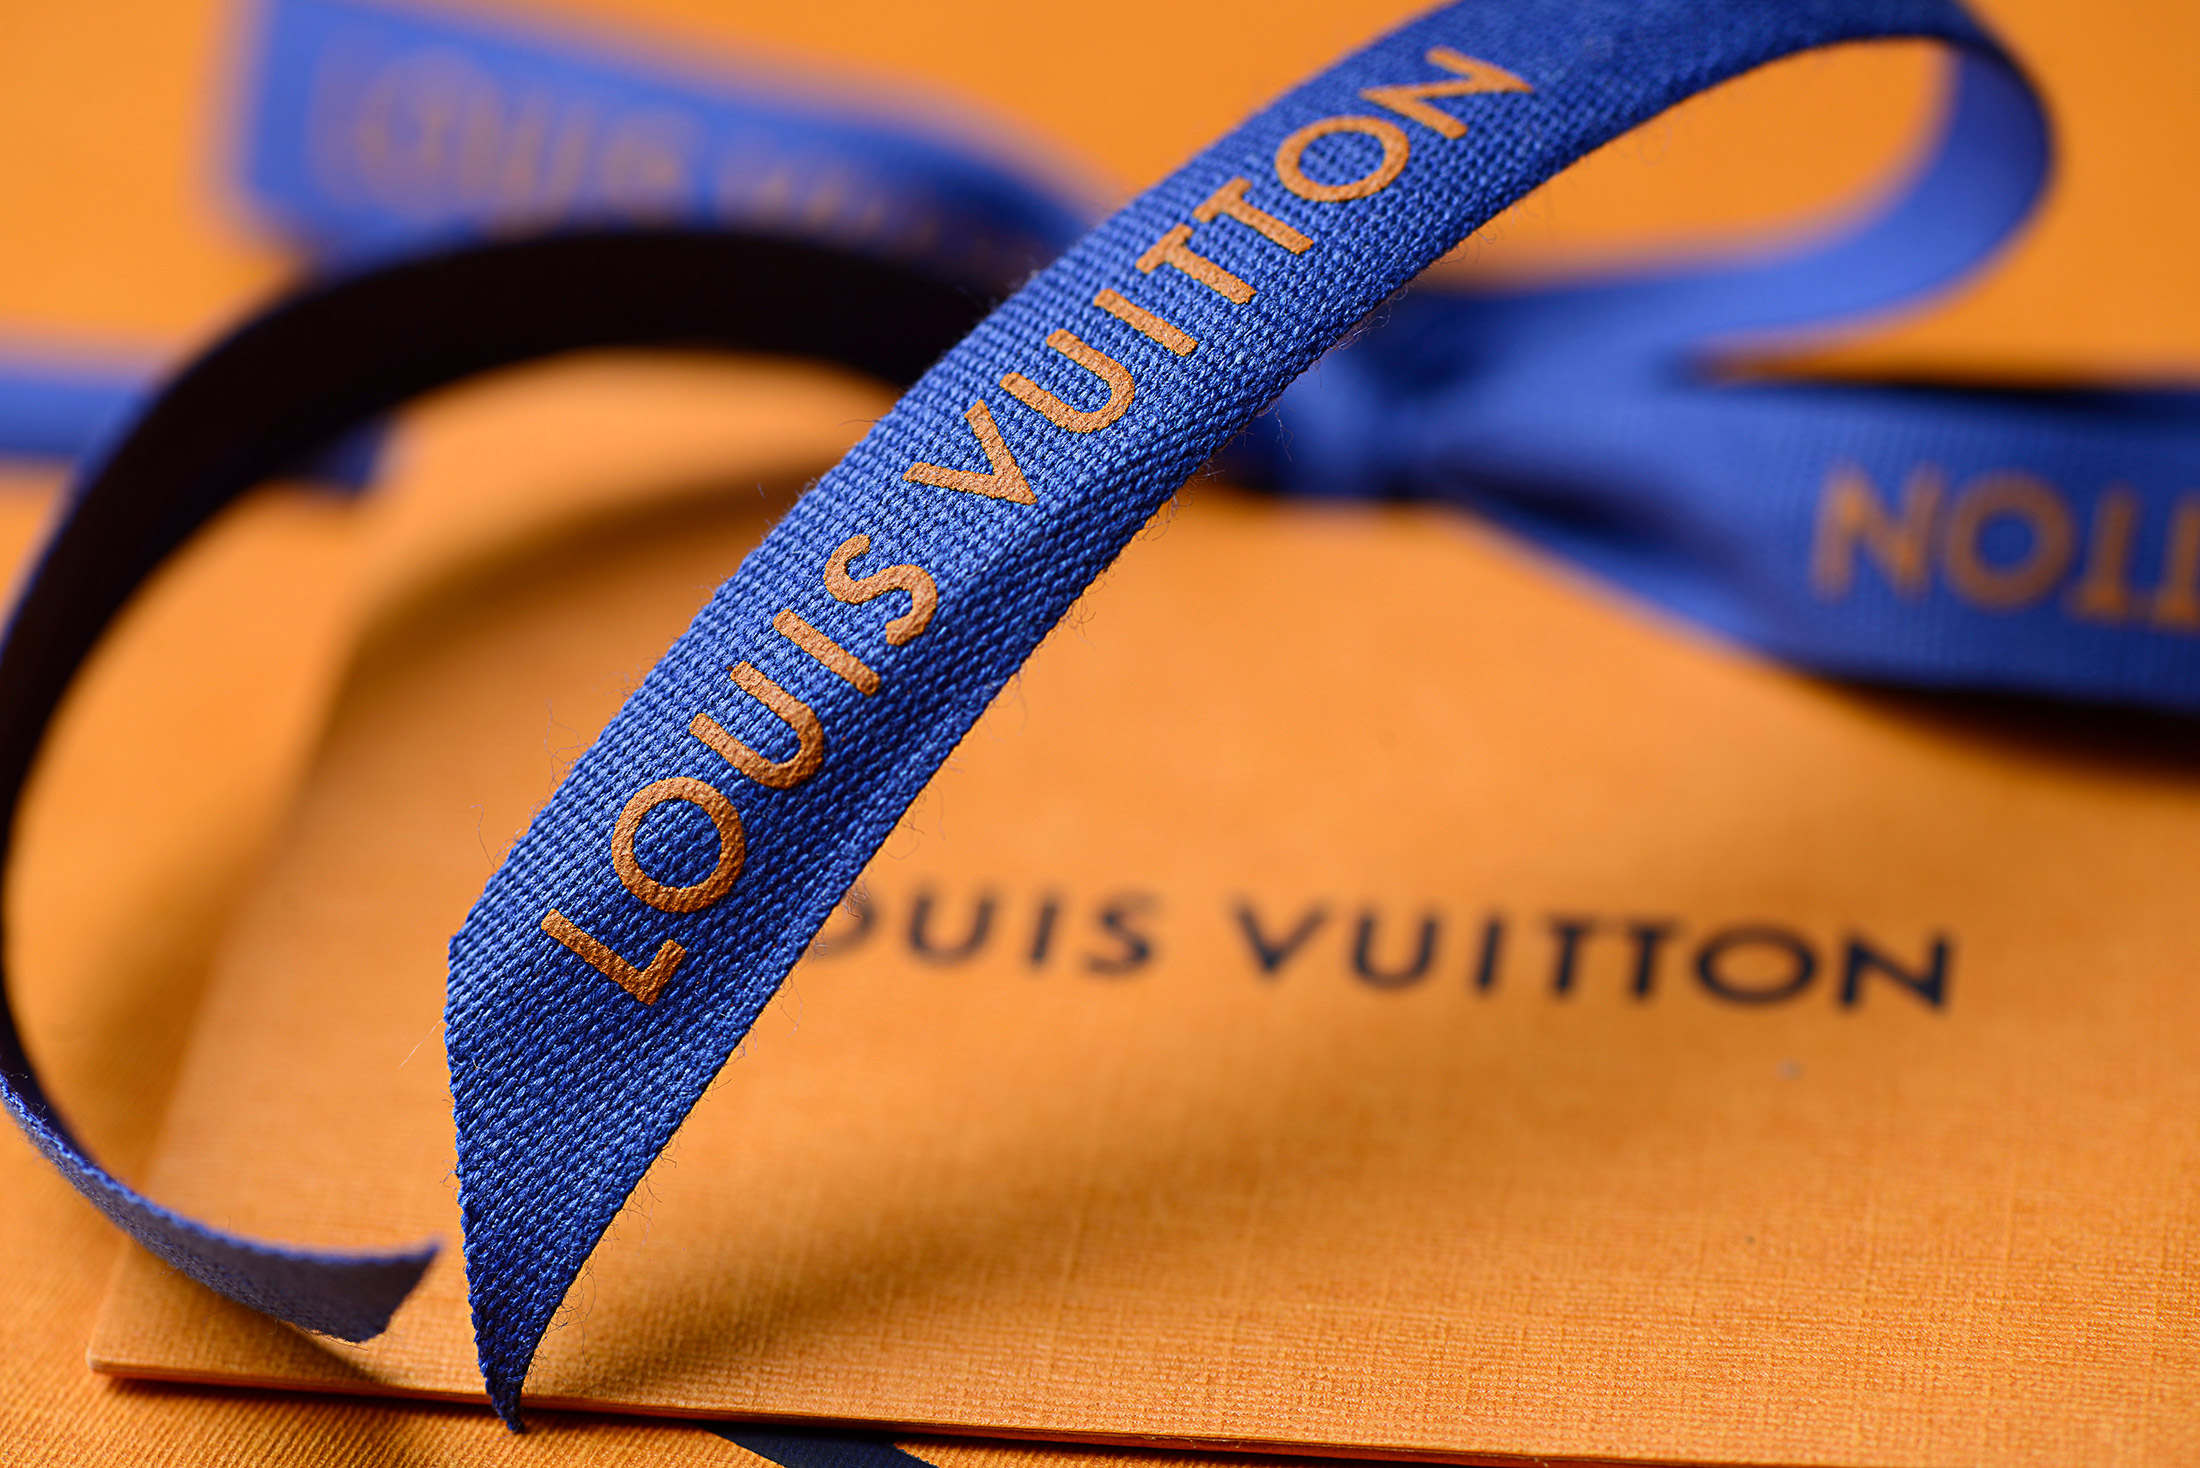 Louis Vuitton suitcases - Picture of Opulence Luxury & Vintage, Paris -  Tripadvisor